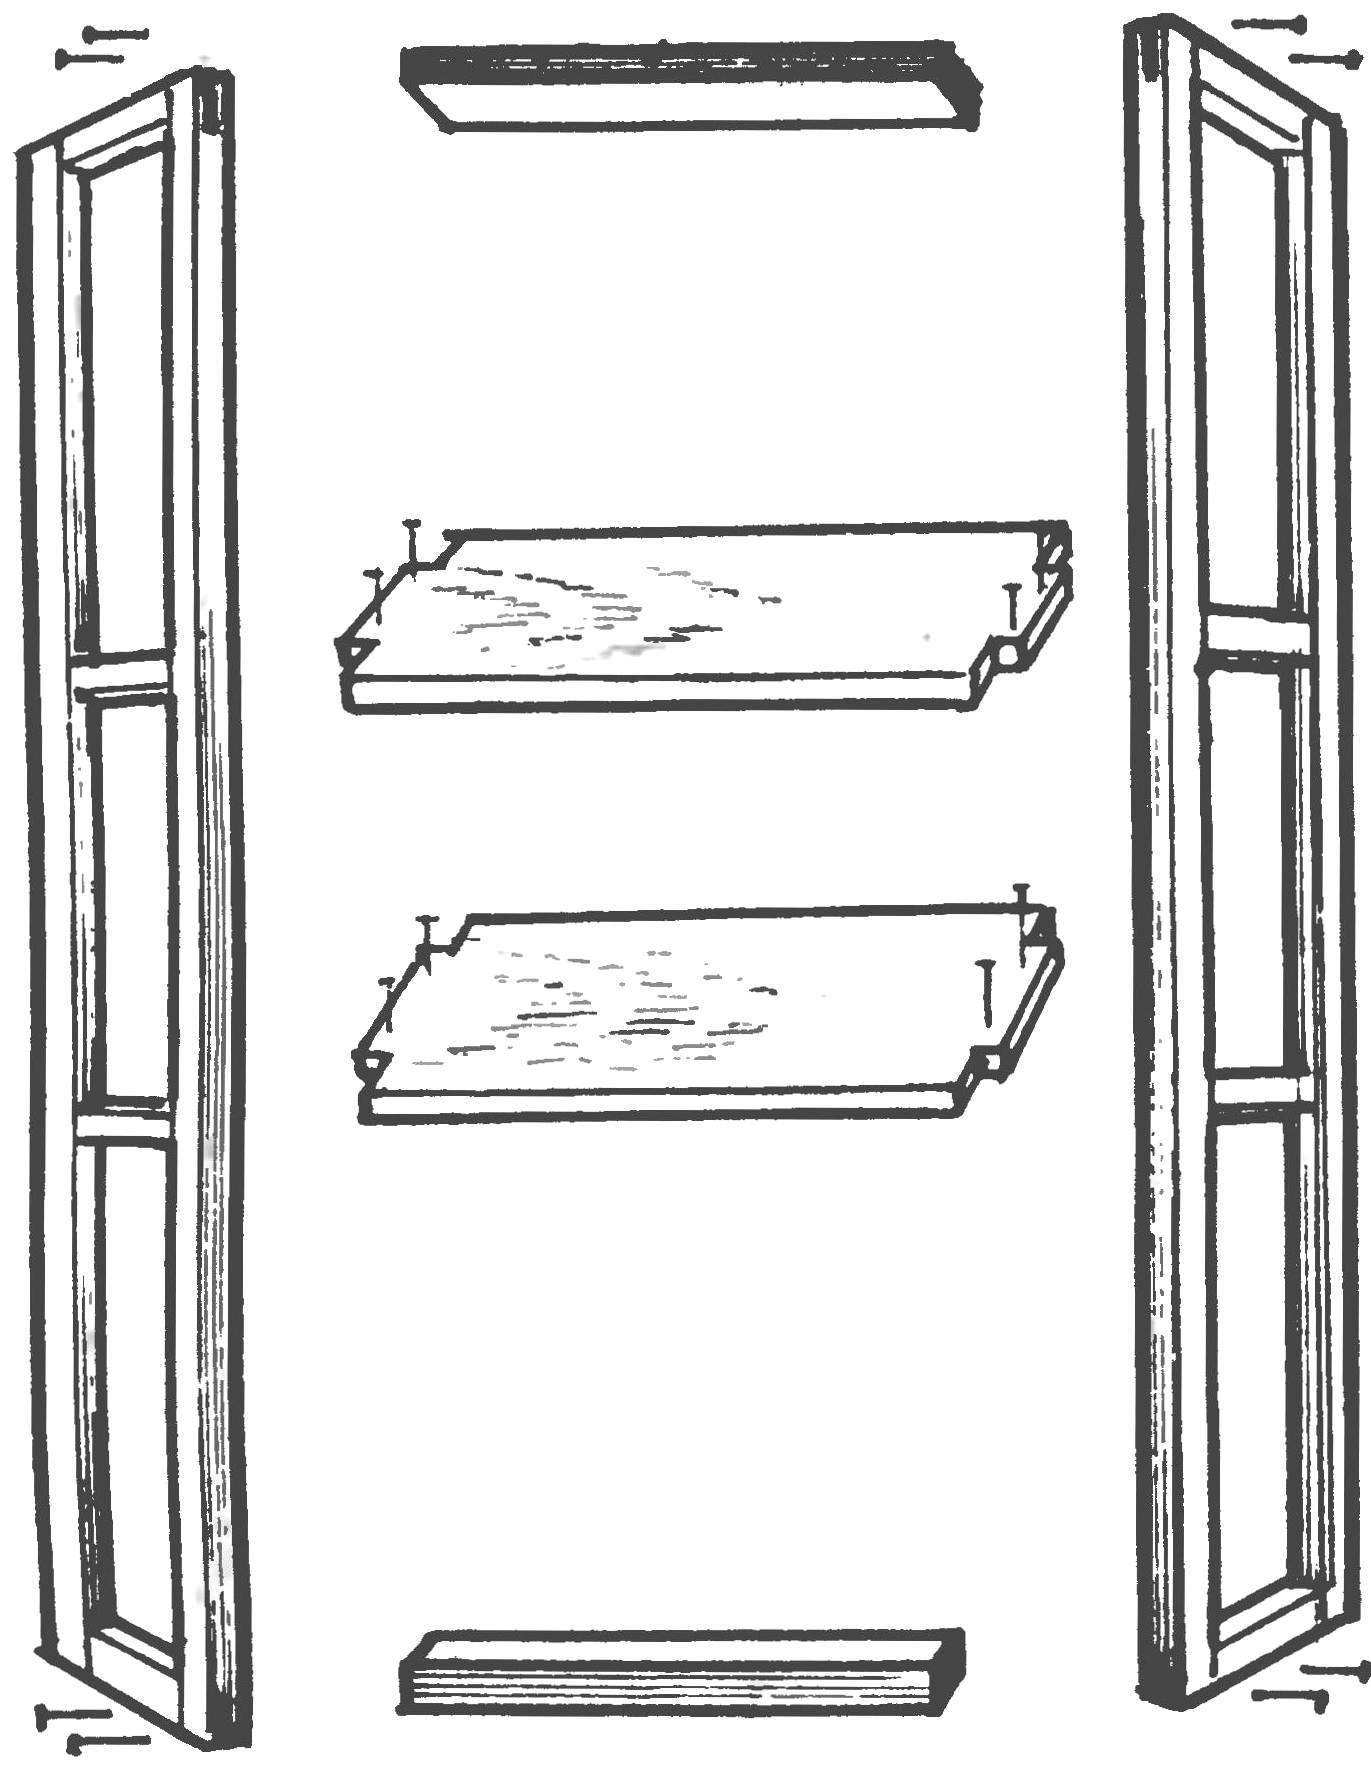 Сборка основных узлов и деталей упрощенного варианта оконной оранжереи — без дверцы и остекления